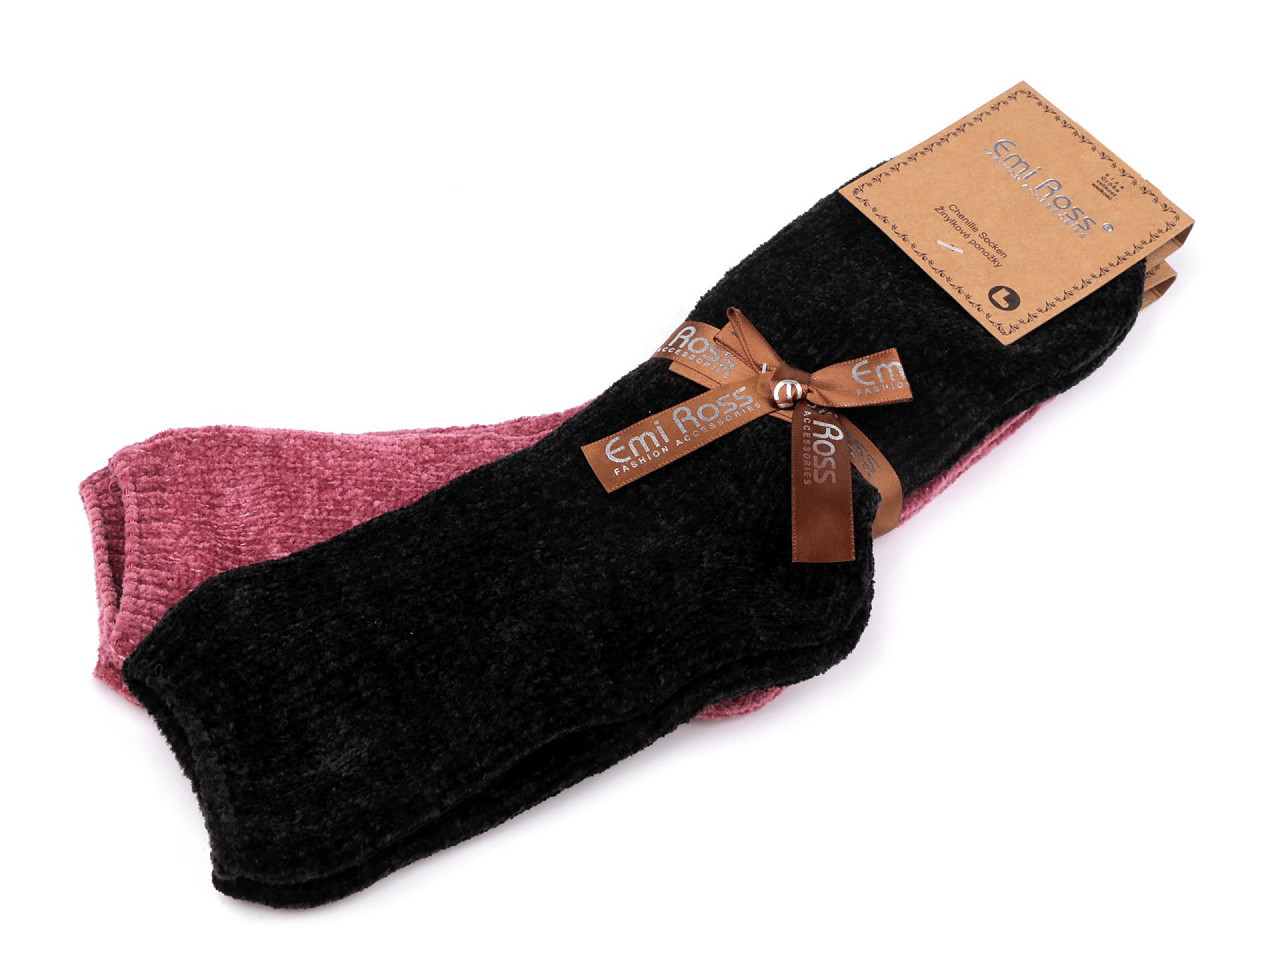 Dámské žinylkové ponožky Emi Ross, barva 26 (vel. 39-42) mix